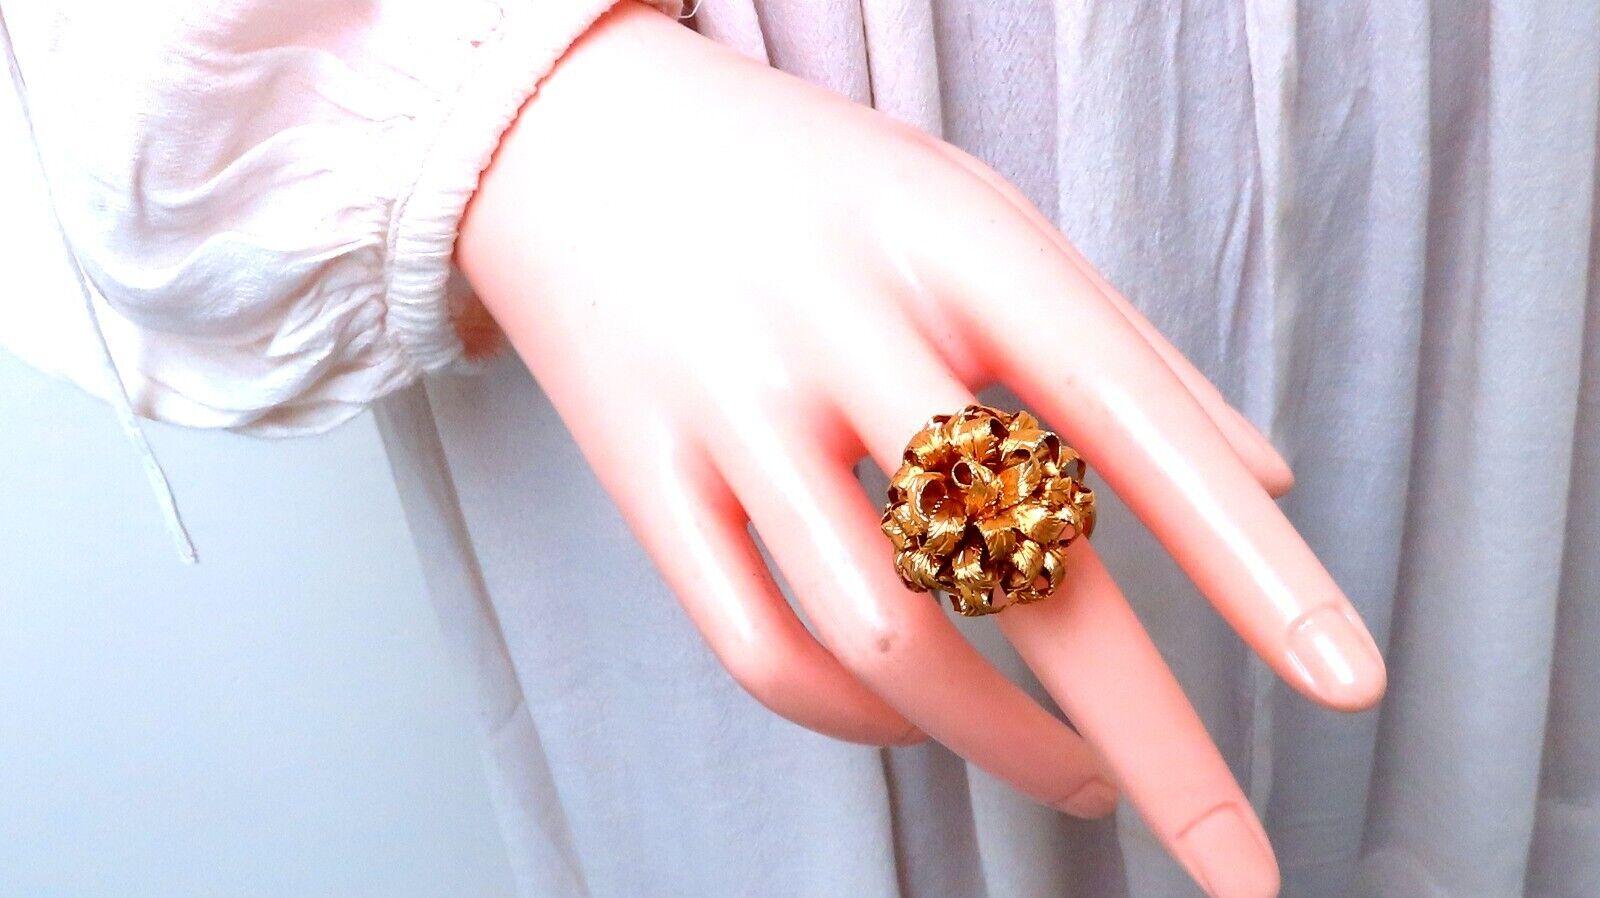 Vintage Florentine Gold Ring.

3D Leaf Patina

25mm wide

16 mm depth

18 karat yellow gold 16.9 grams

Size 7.25